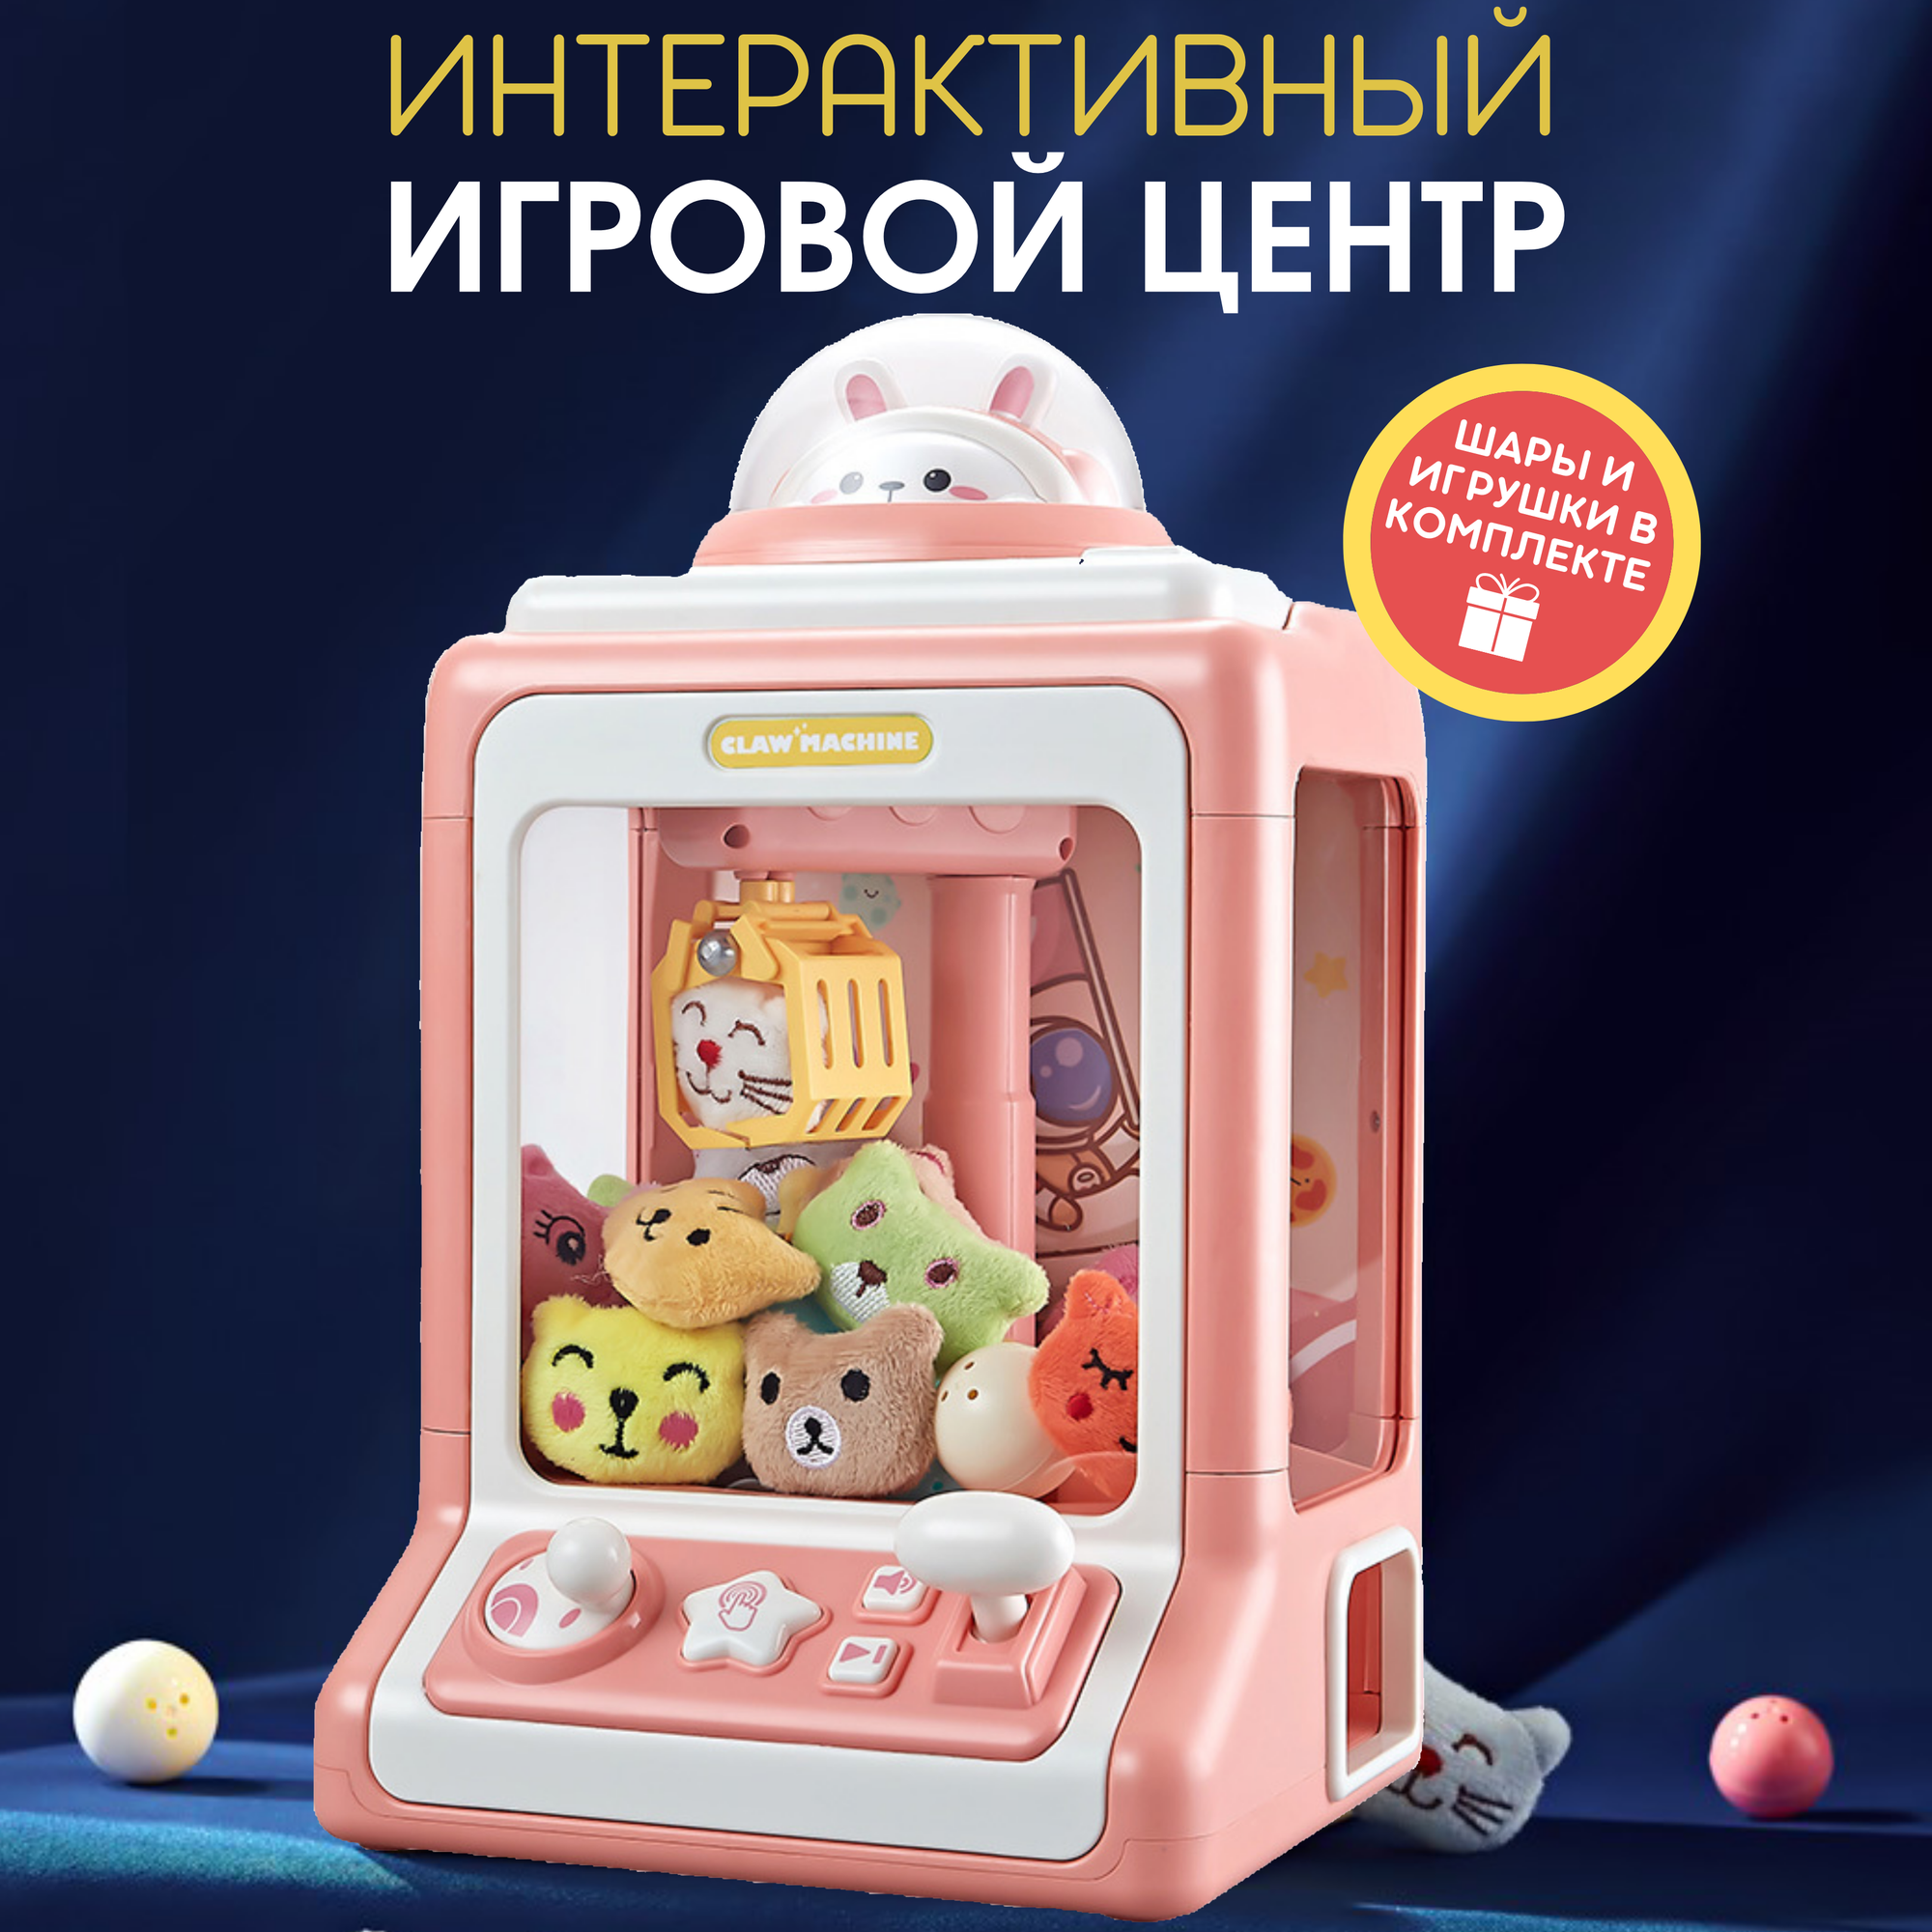 Интерактивная развивающая игрушка "Игровой автомат Доставайка" - Аппарат для ловли игрушек, хватайка, розовая